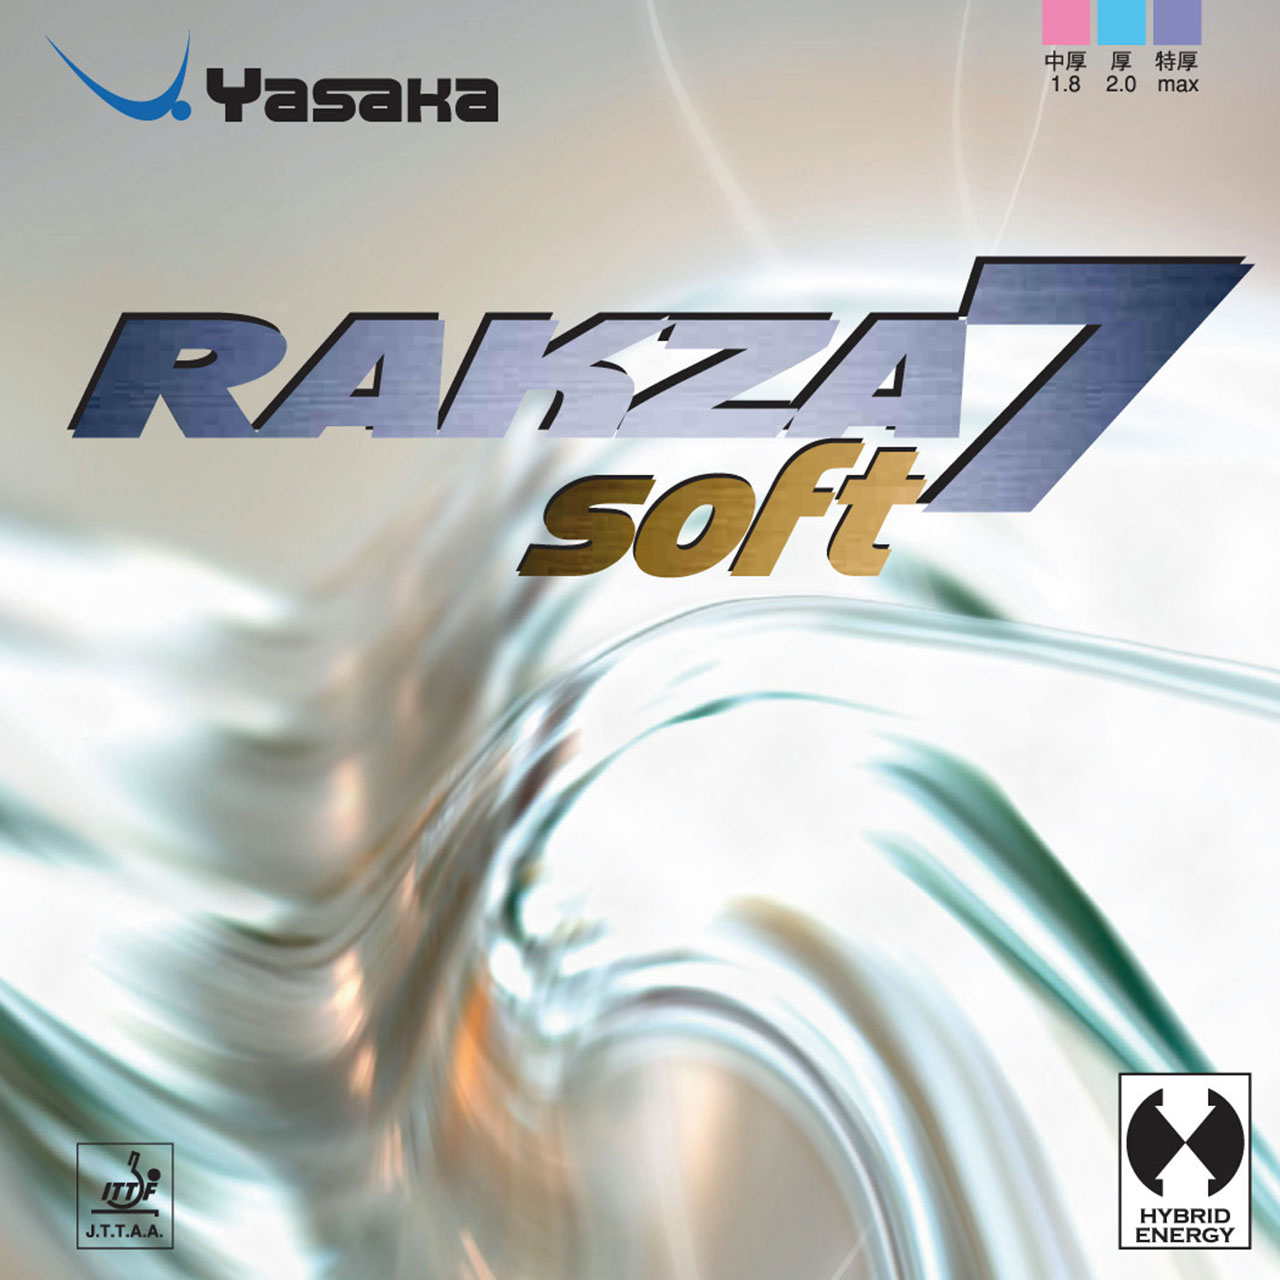 Tischtennis Belag Yasaka Rakza 7 Soft Cover